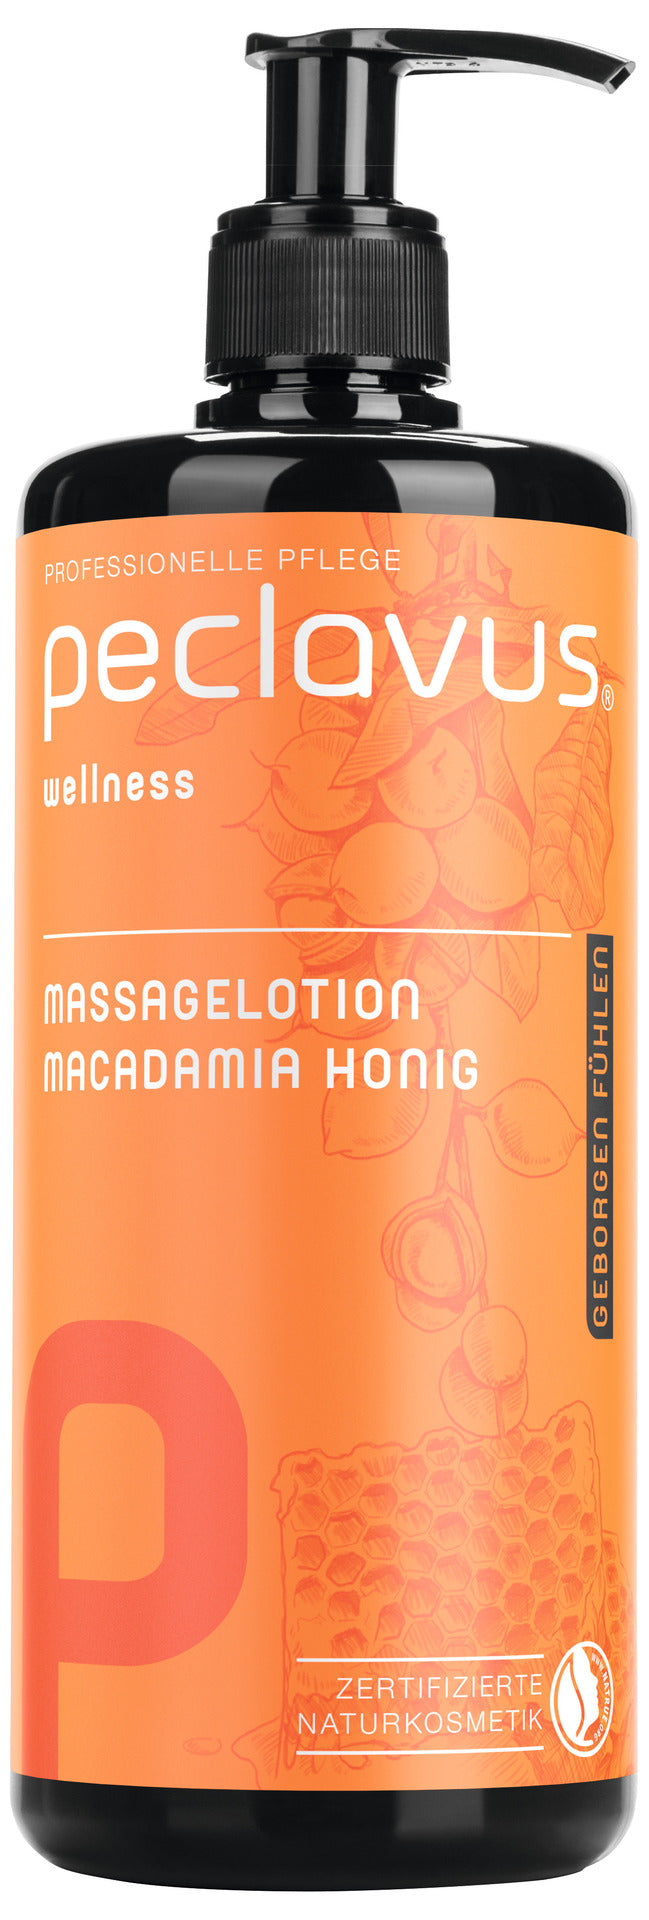 Lotion de massage - Miel de Macadamia - 500 ml - Peclavus